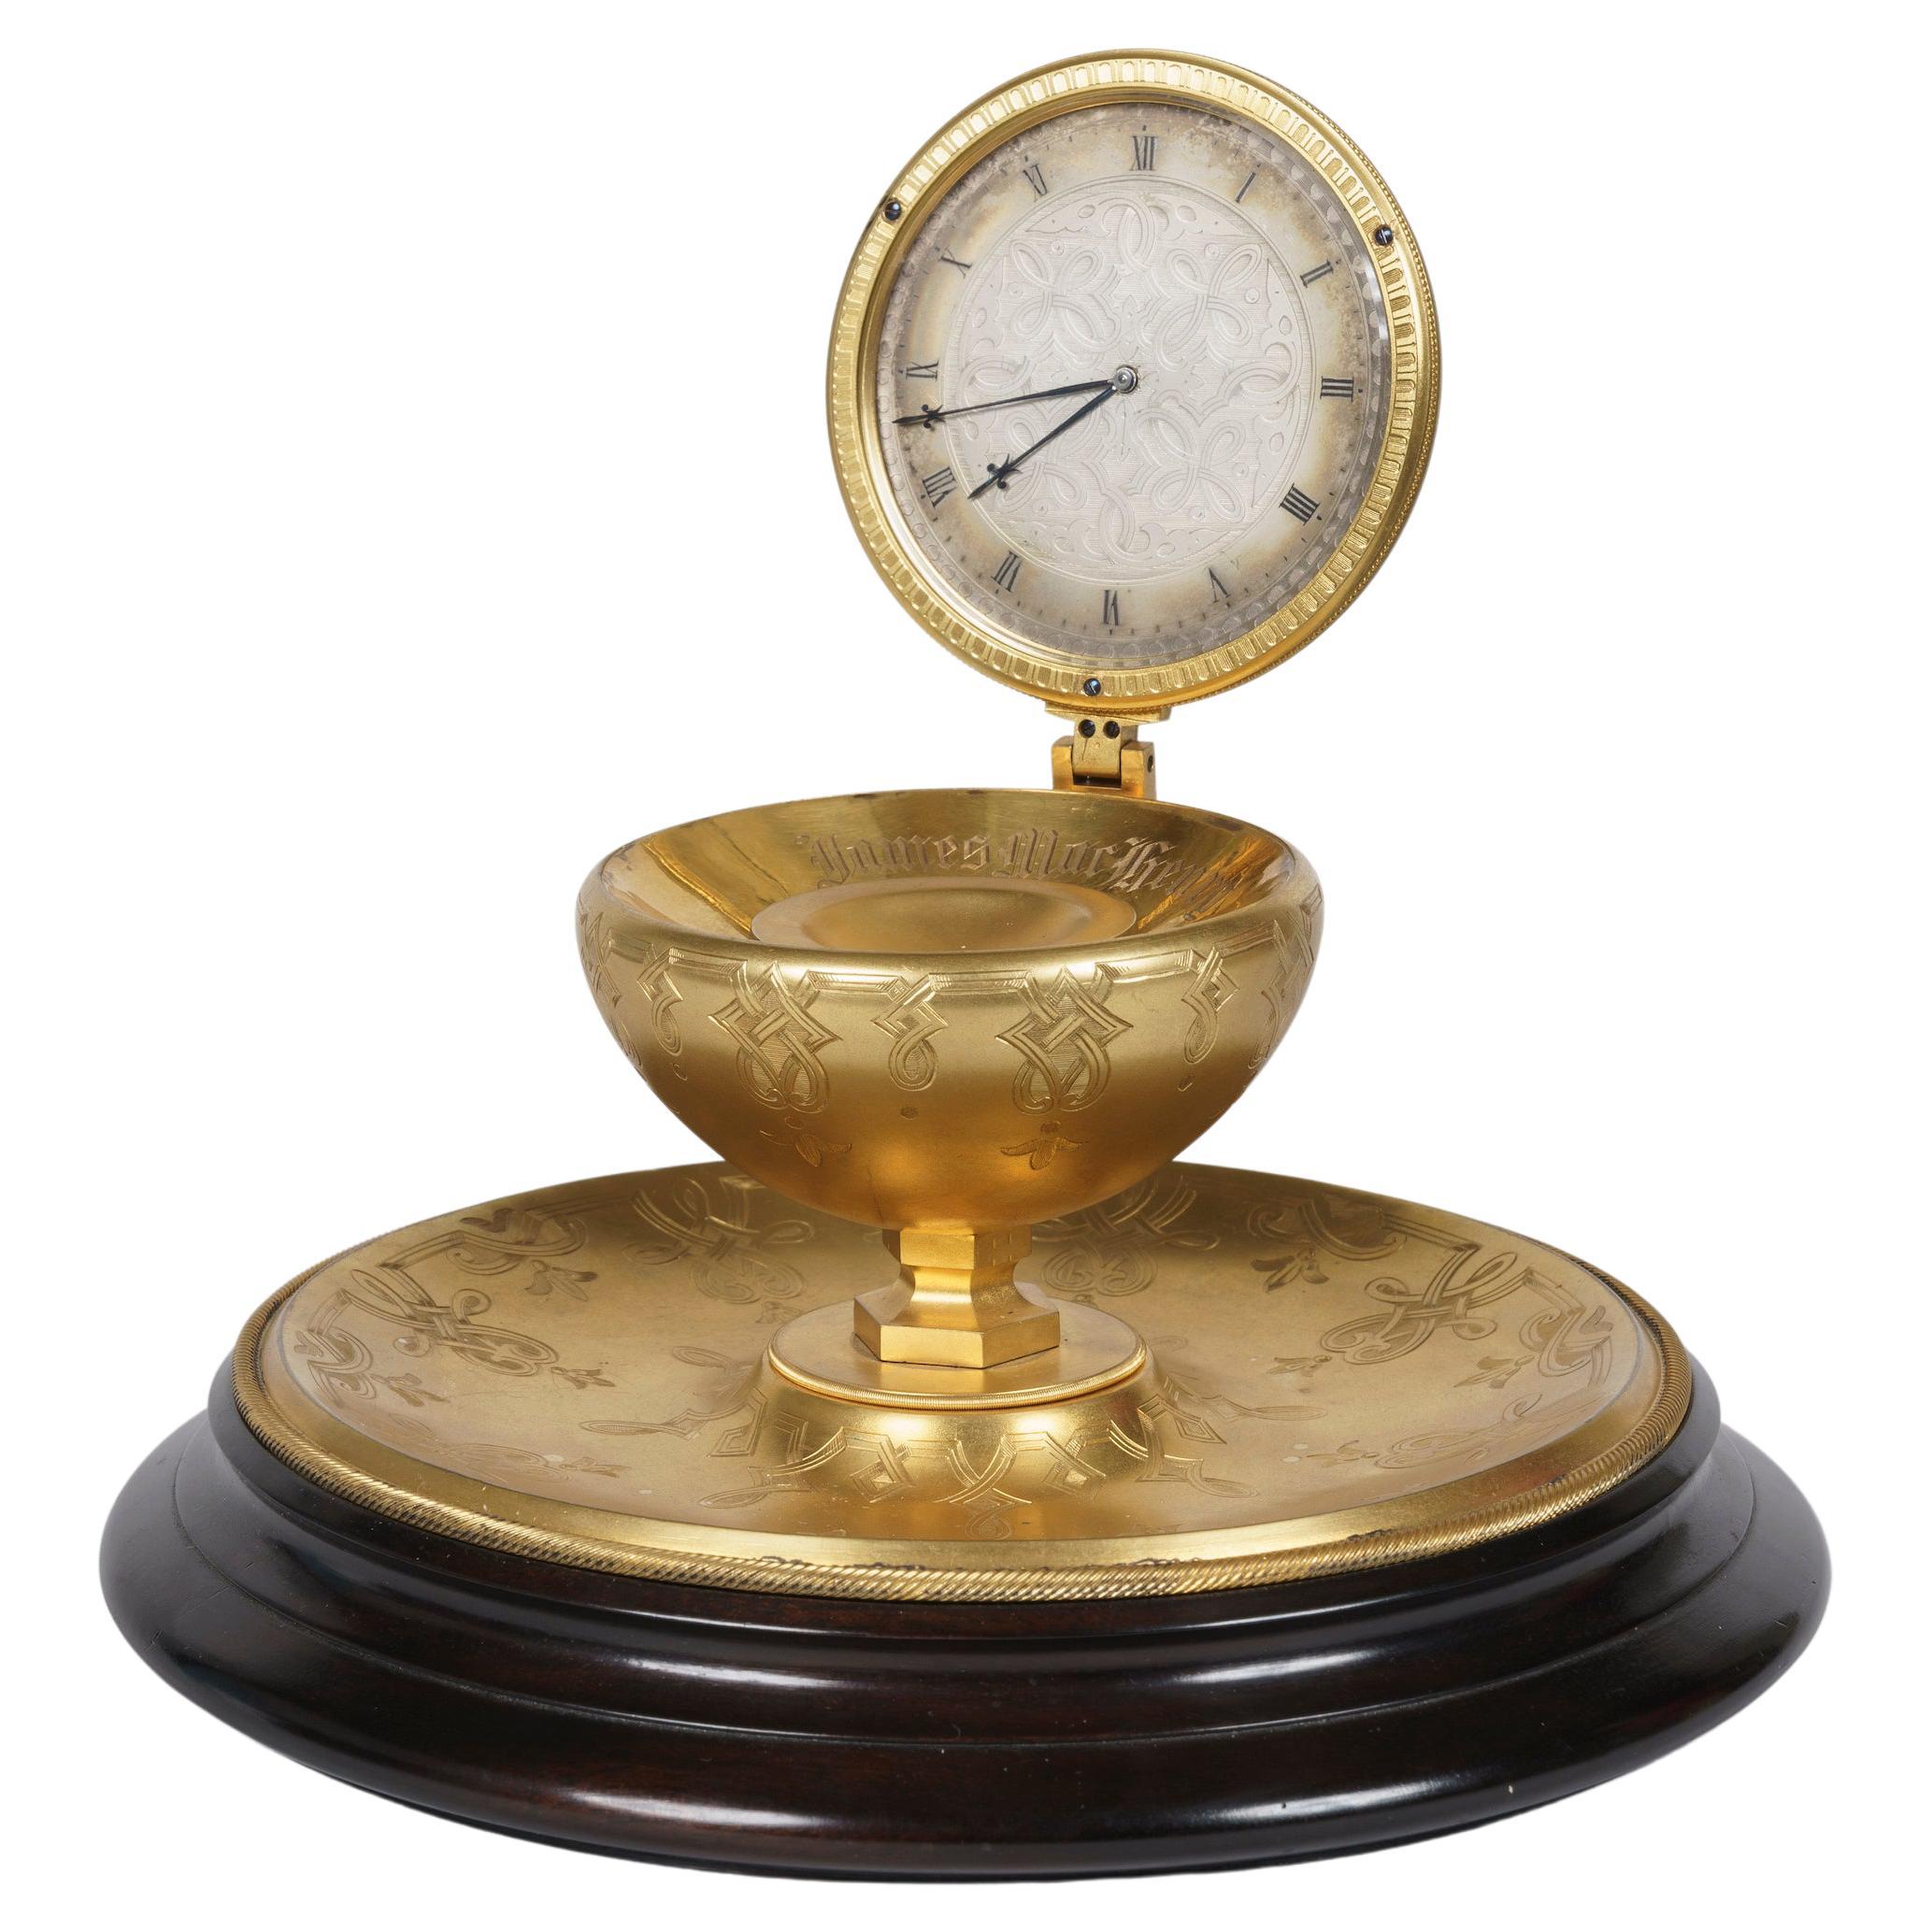 Rare horloge de table « Enkwell » gravée en laiton du 19ème siècle attribuée à Thomas Cole